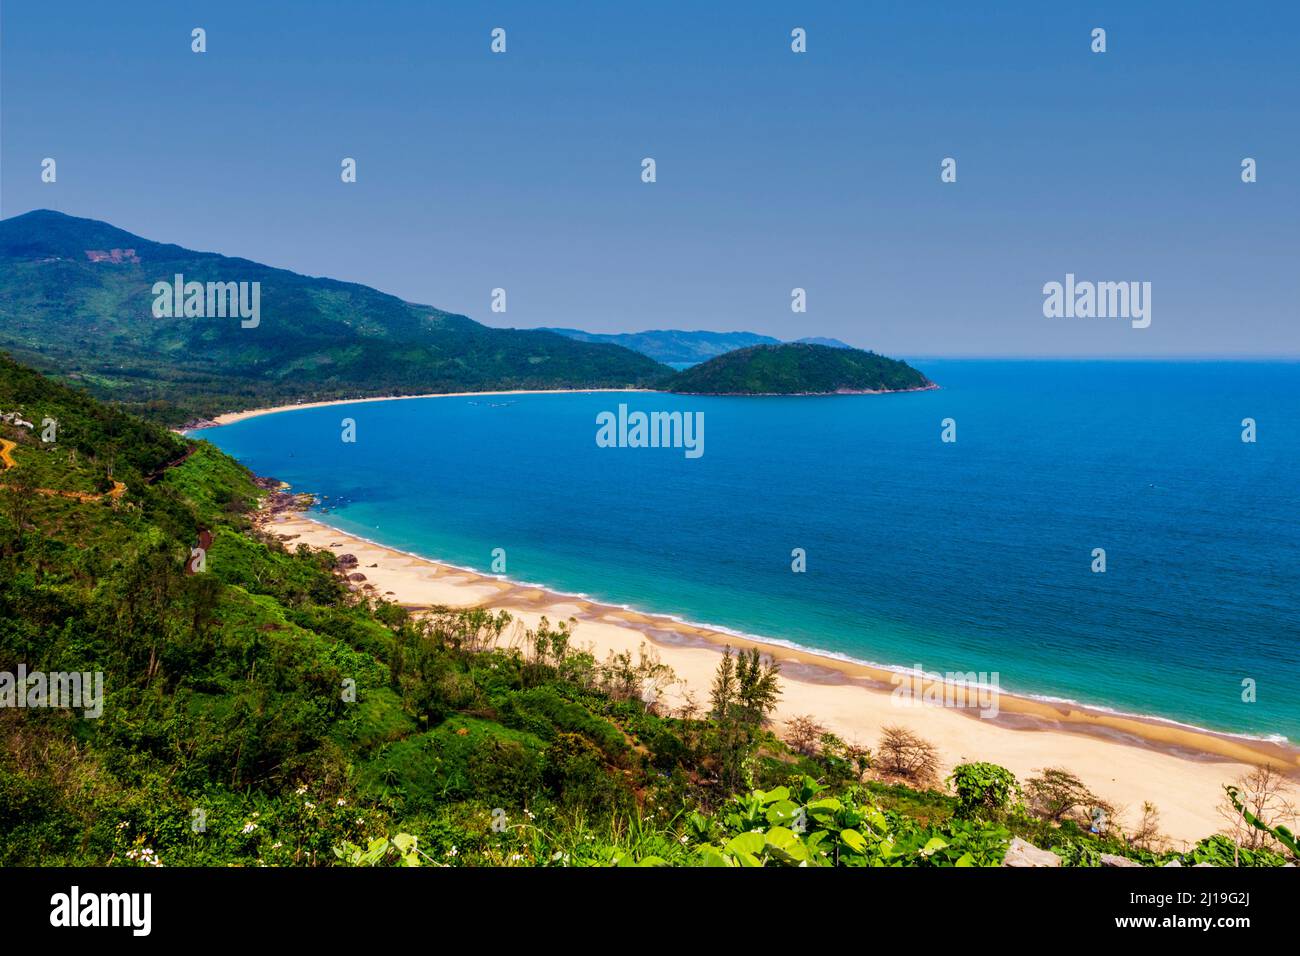 Une magnifique crique avec une plage de sable juste au nord de Da nang. Eau bleue avec végétation verte sur la montagne. Banque D'Images